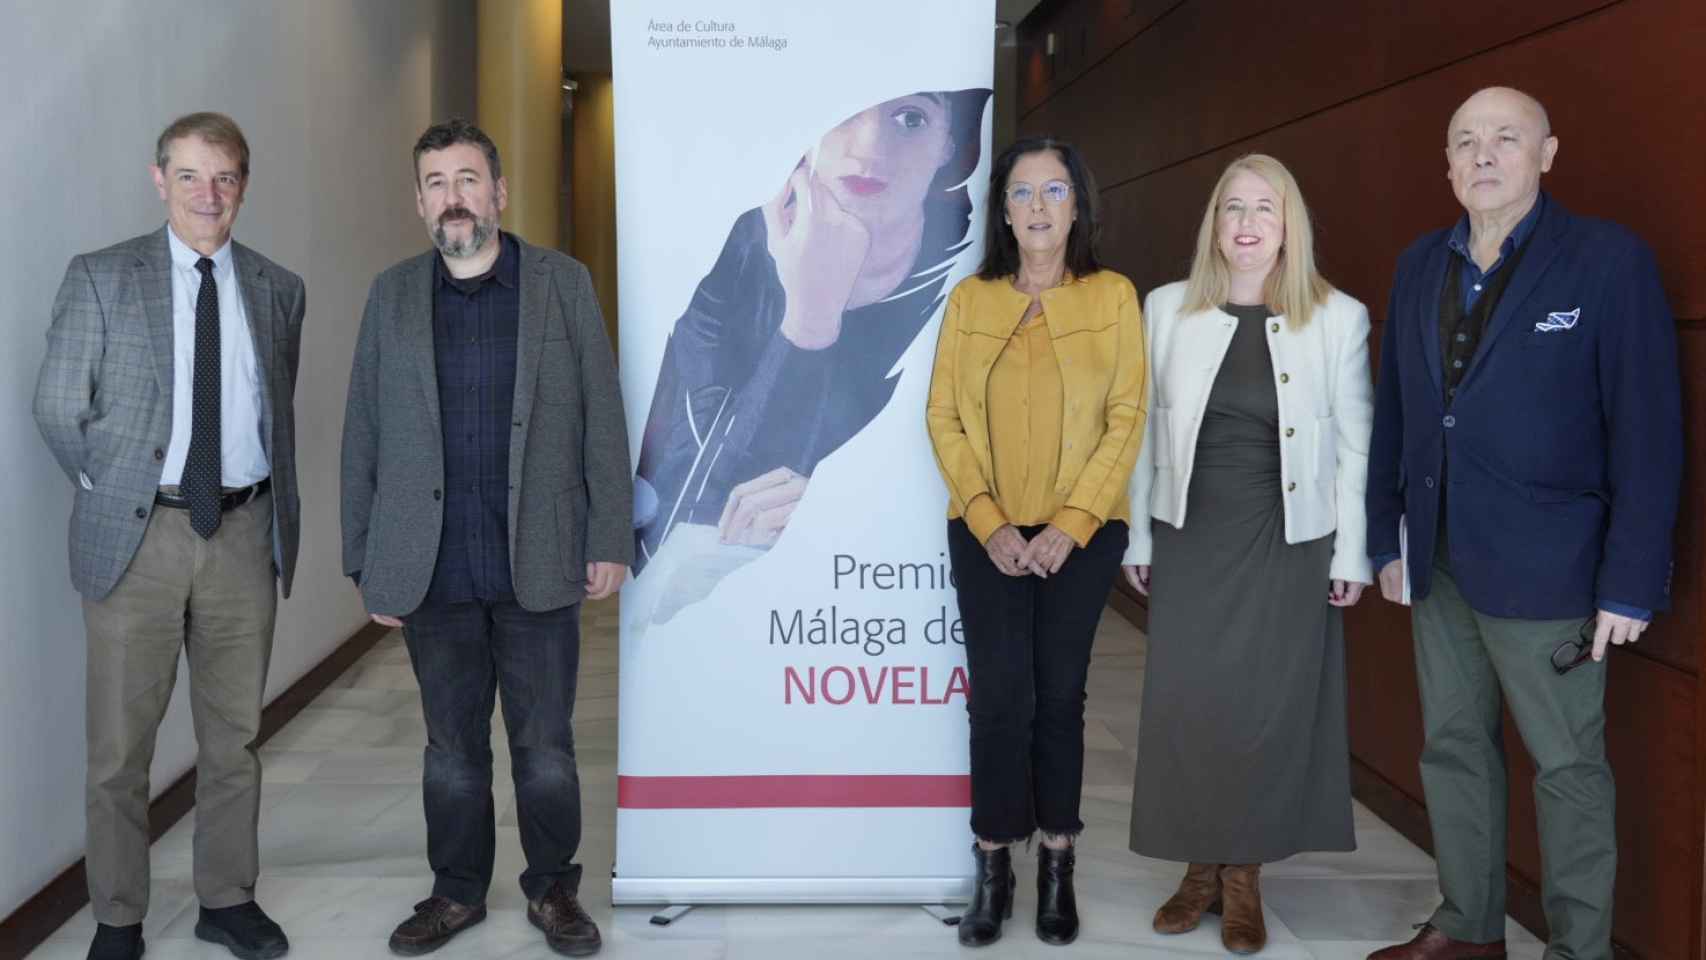 A la izquierda de la imagen, Joan Tarrida, editor de Galaxia Gutenberg, y Mario Cuenca Sandoval, ganador del XVII Premio Málaga de Novela, en la rueda de prensa en la que se ha anunciado el fallo del galardón.